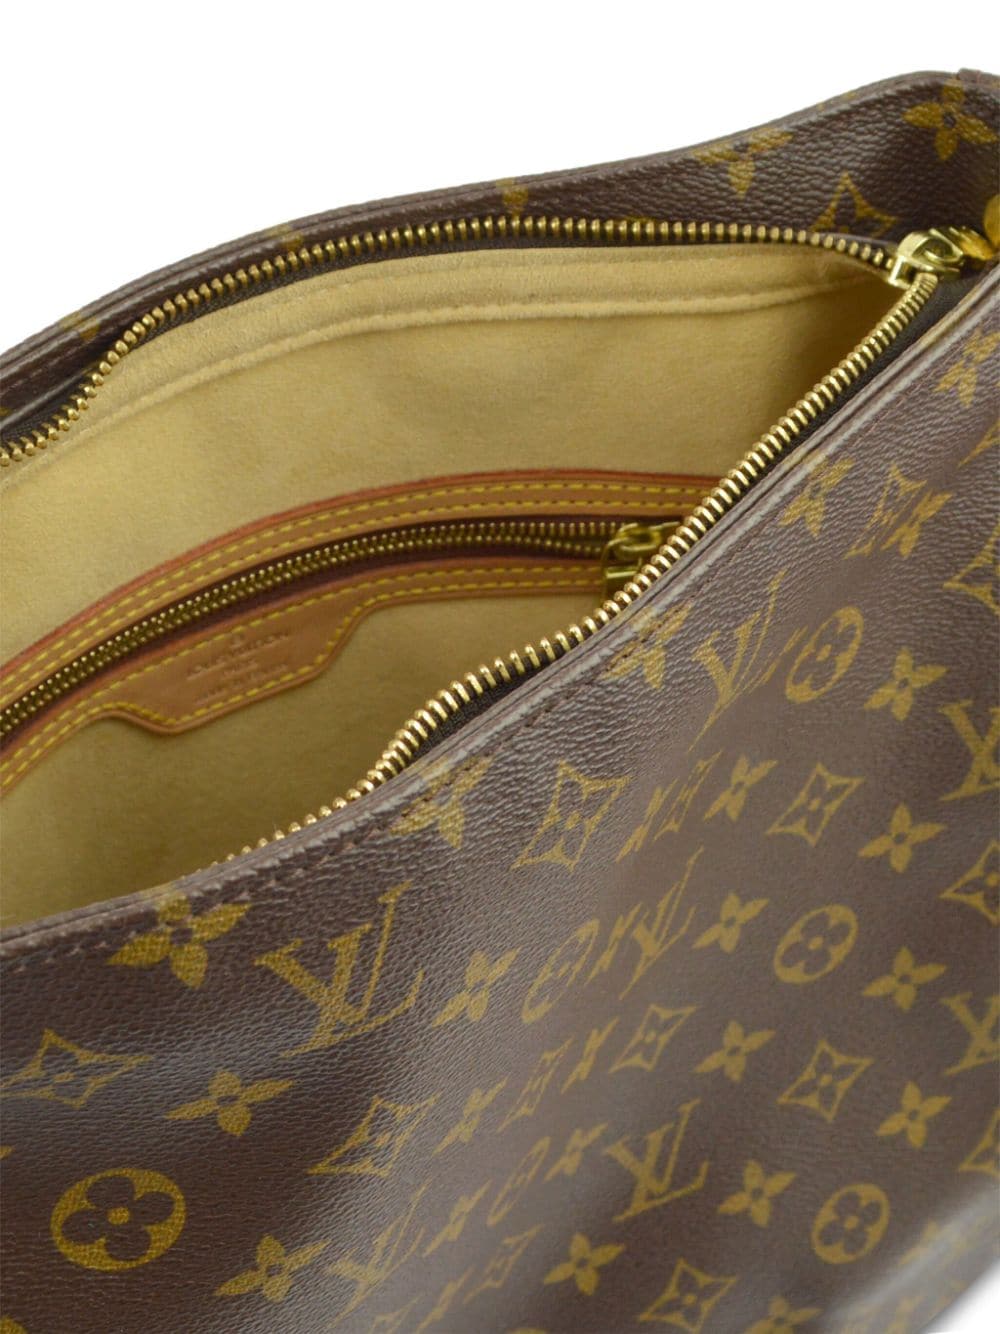 Pre-owned Louis Vuitton 1999 Looping Gm Handbag In Brown